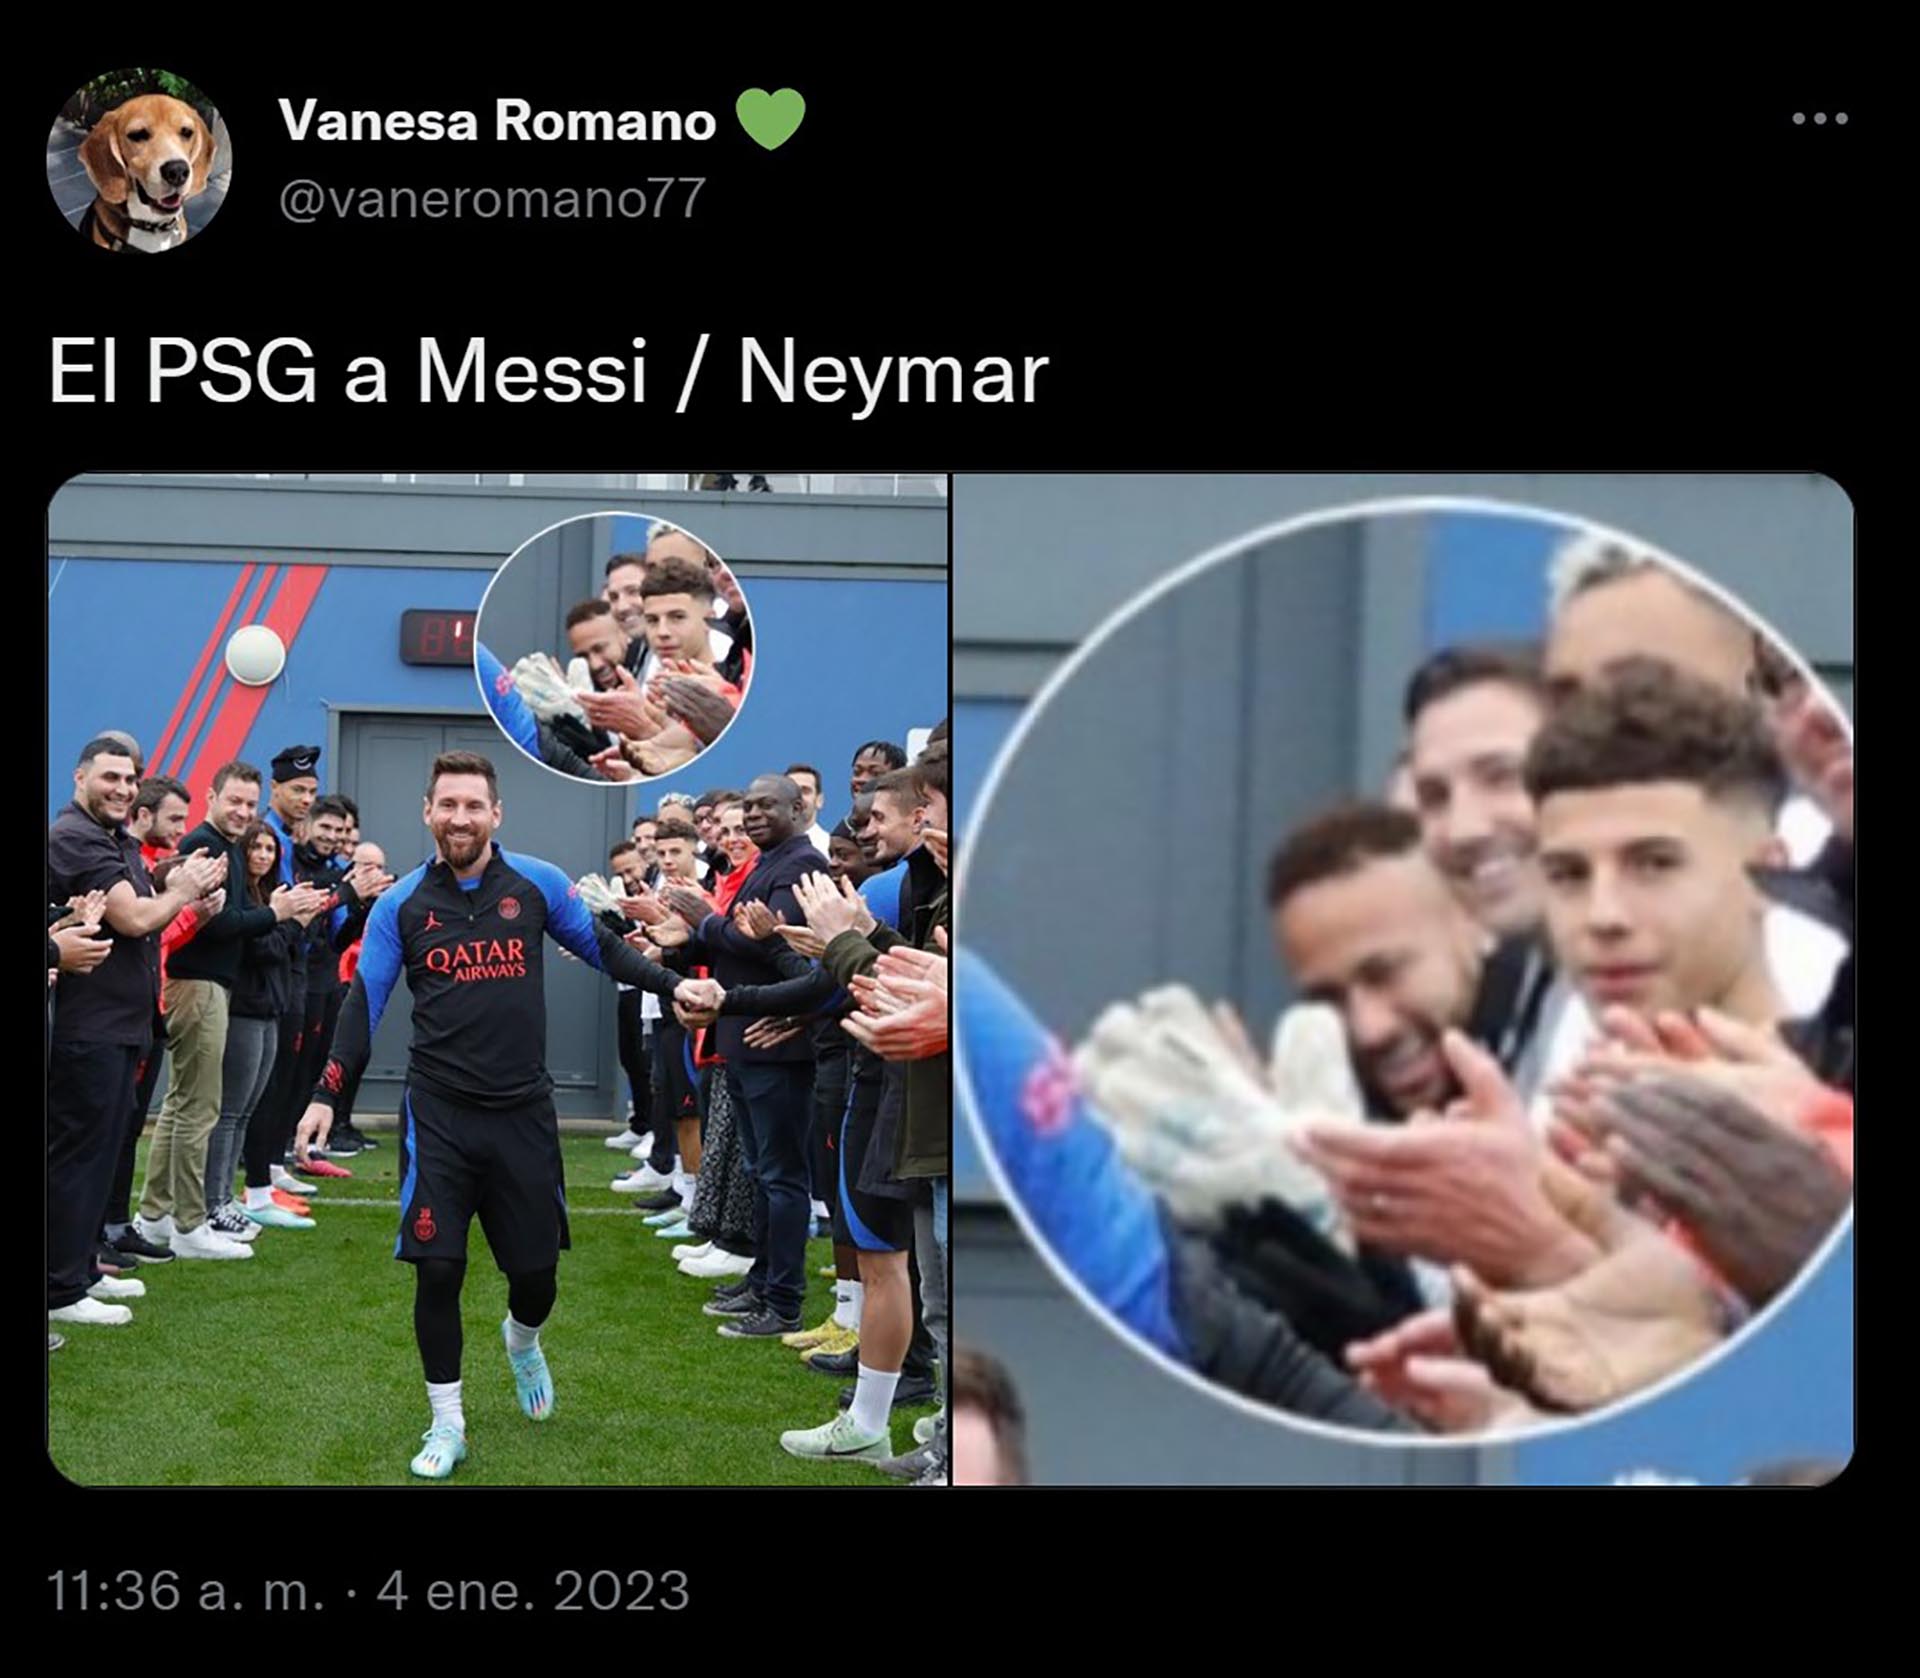 La felicidad de Neymar en el pasillo de campeón a Messi